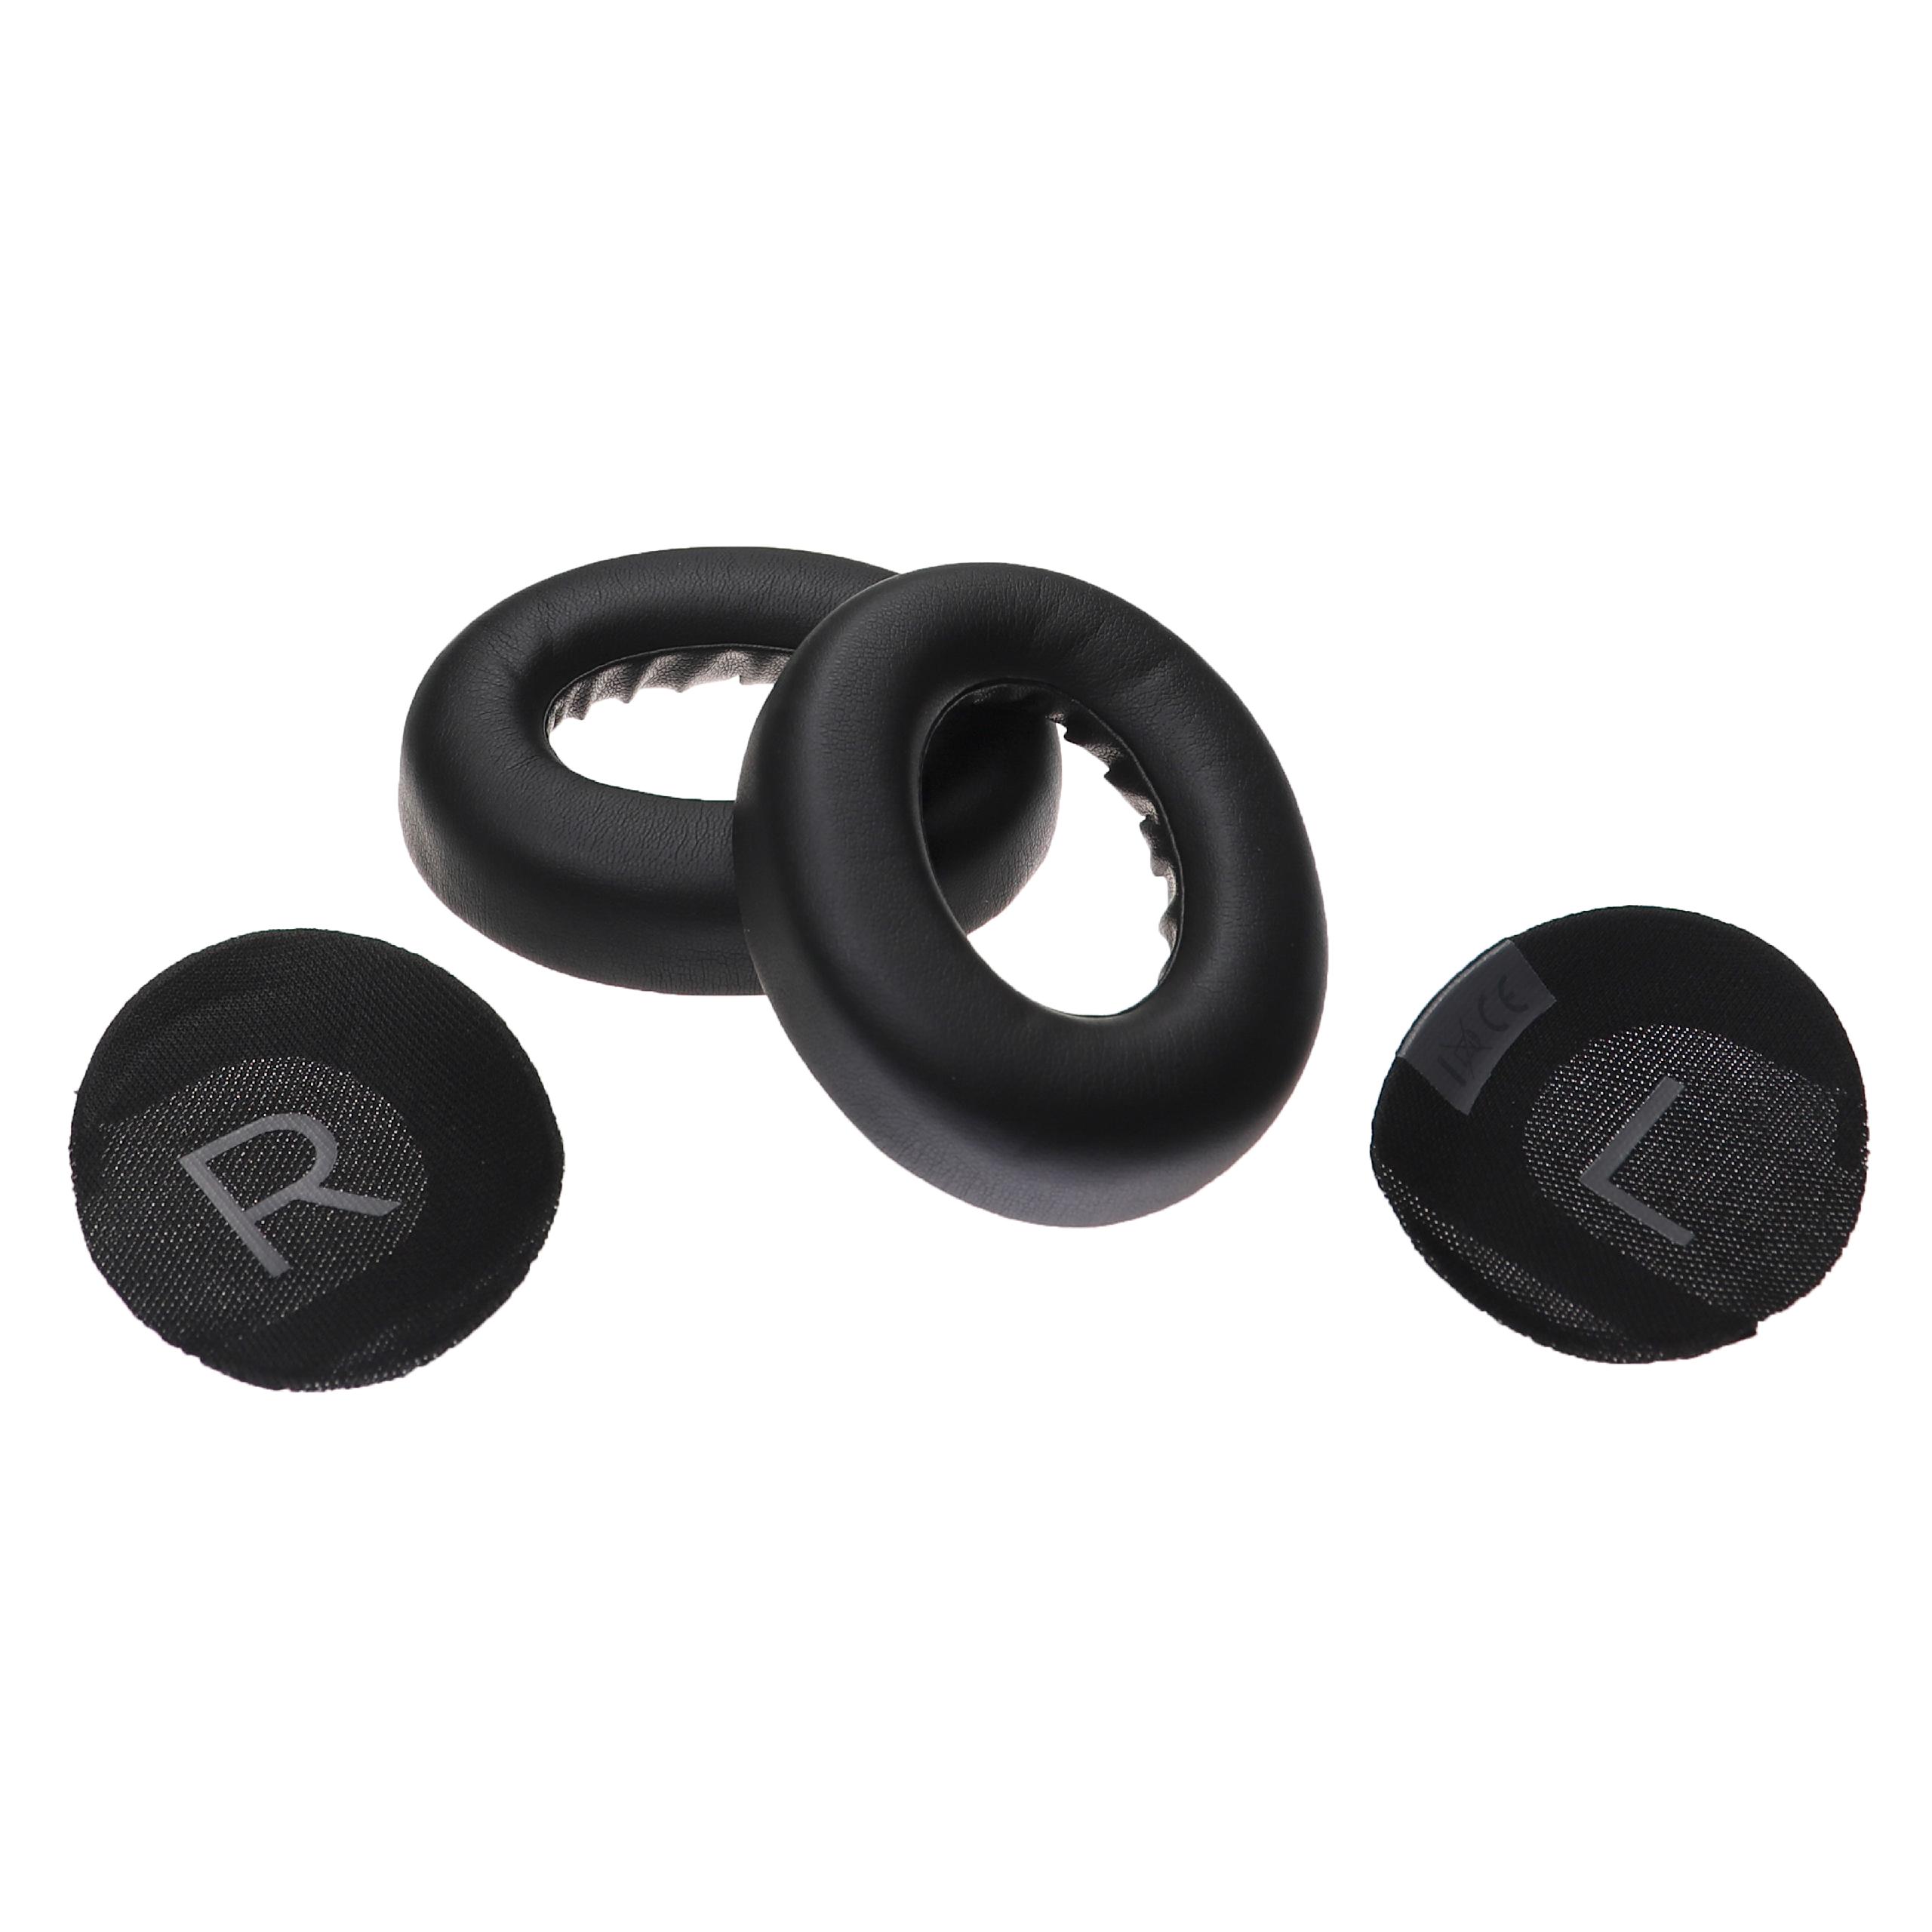 Ohrenpolster passend für Bose NC 700 Kopfhörer u.a. - Mit Memory-Schaum, Weiches Material, 16 x 9,7 cm, 23 mm 